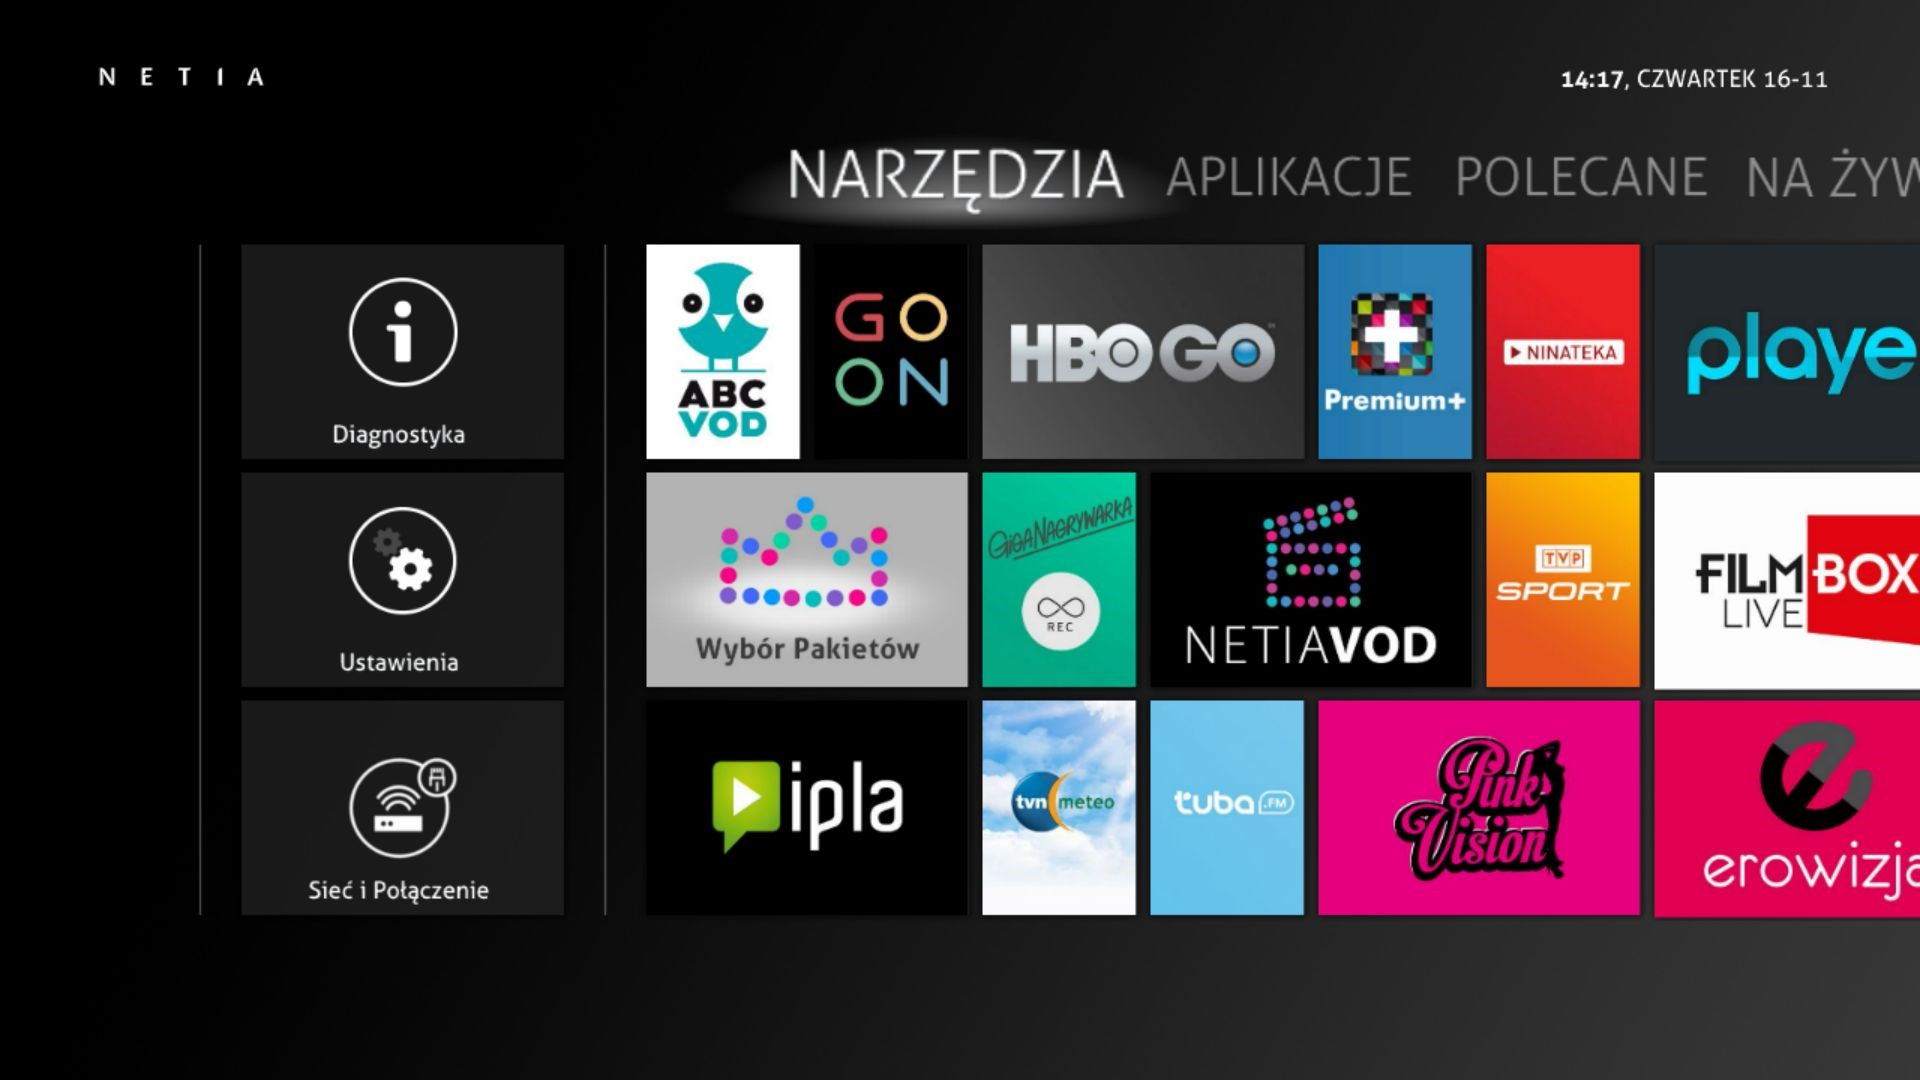 Platforma player.pl odświeża wygląd i menu - sprawdzamy